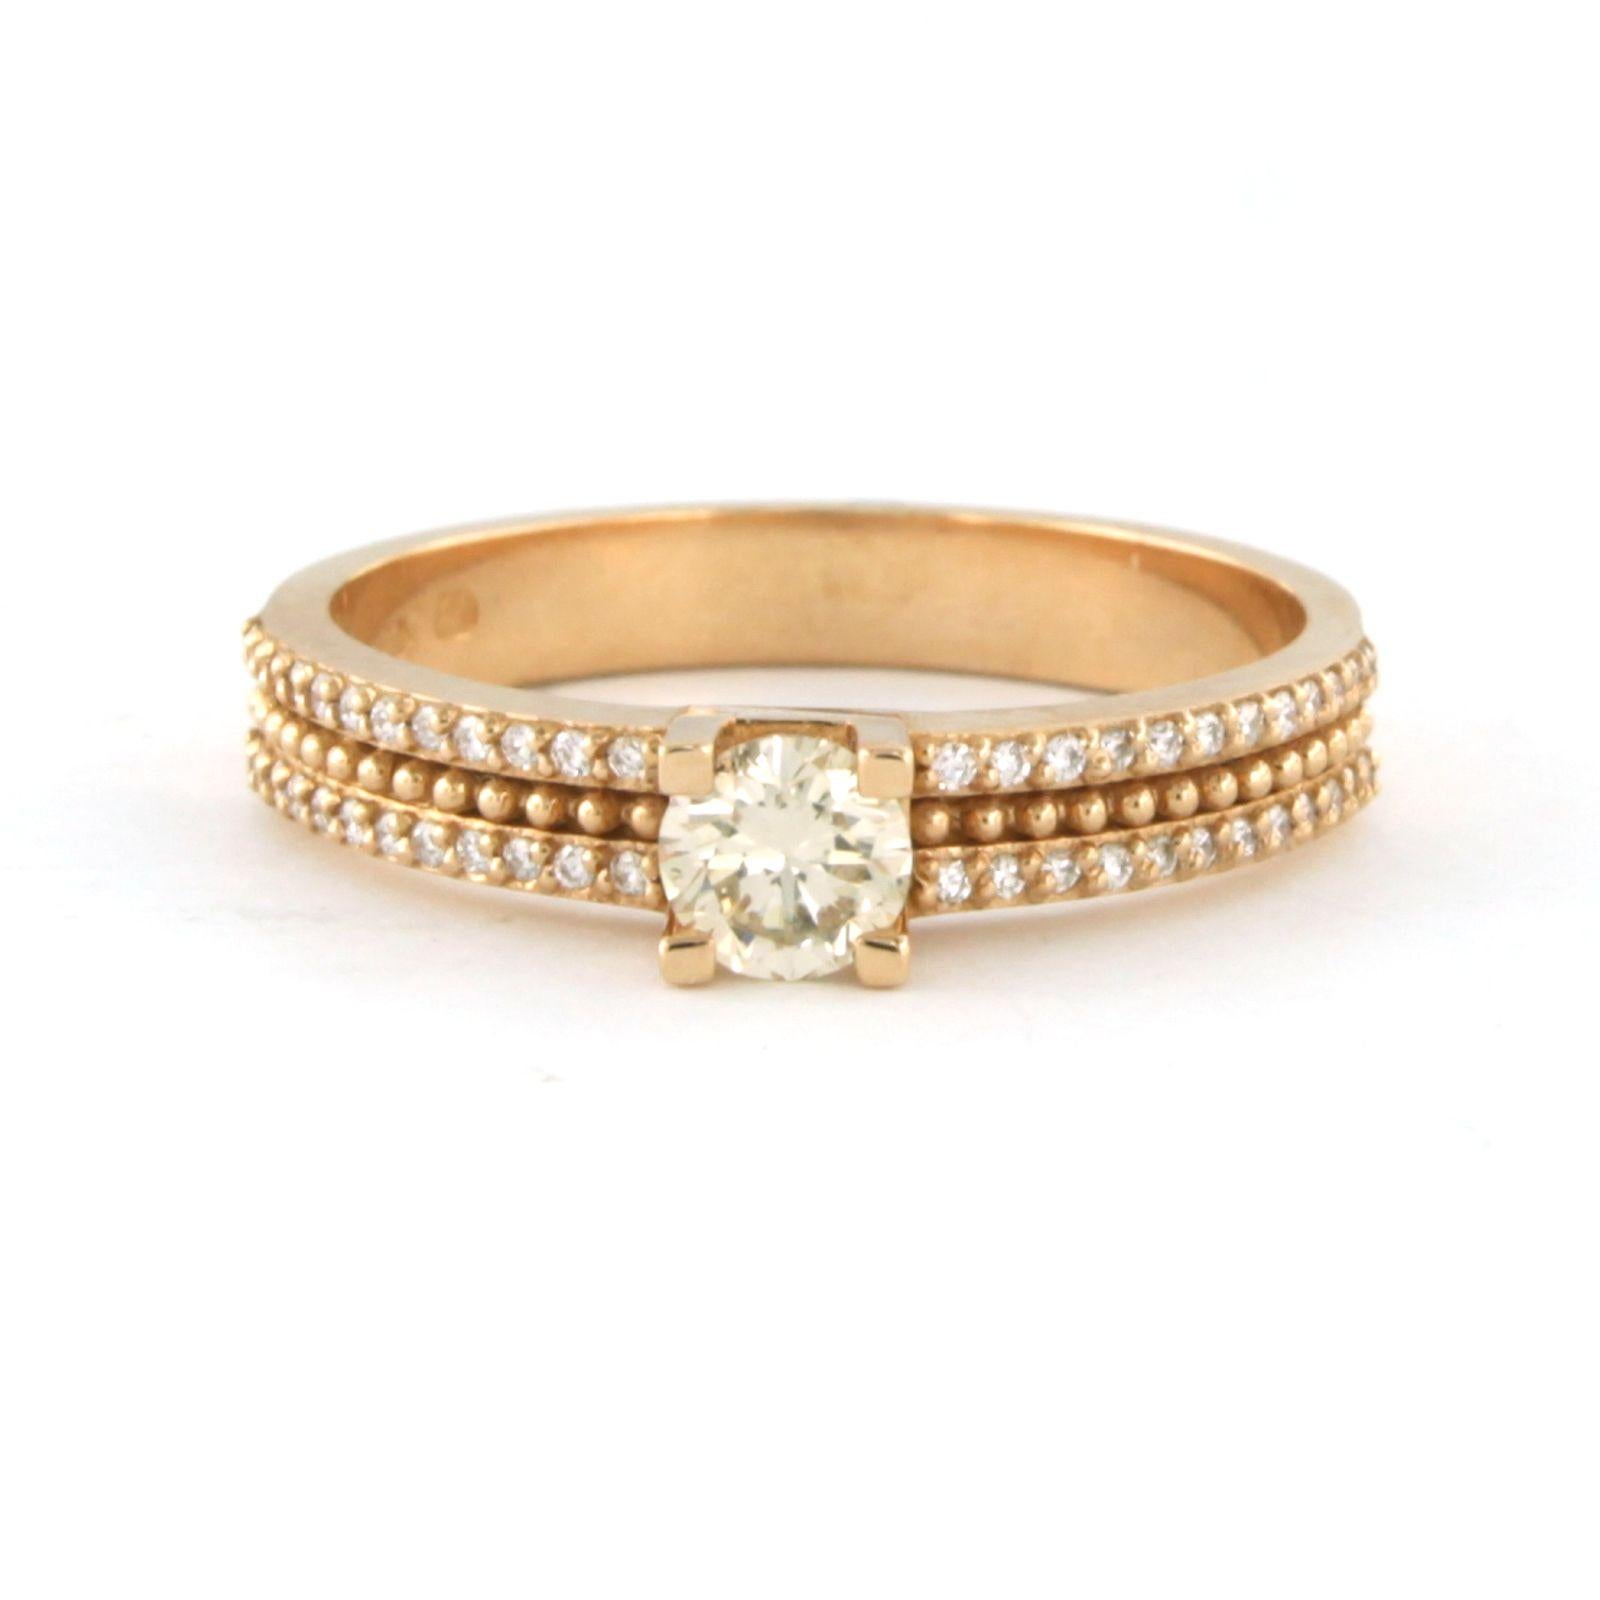 Ring aus 18 Karat Roségold, besetzt mit einem Diamanten im Brillantschliff in der Mitte. 0,32ct - N/O SI - und Diamanten im Brillantschliff auf der Schiene. 0,14ct - F/G - VS/SI - Ringgröße U.S. 7.25 - EU. 17.5(55)

Ausführliche Beschreibung

die